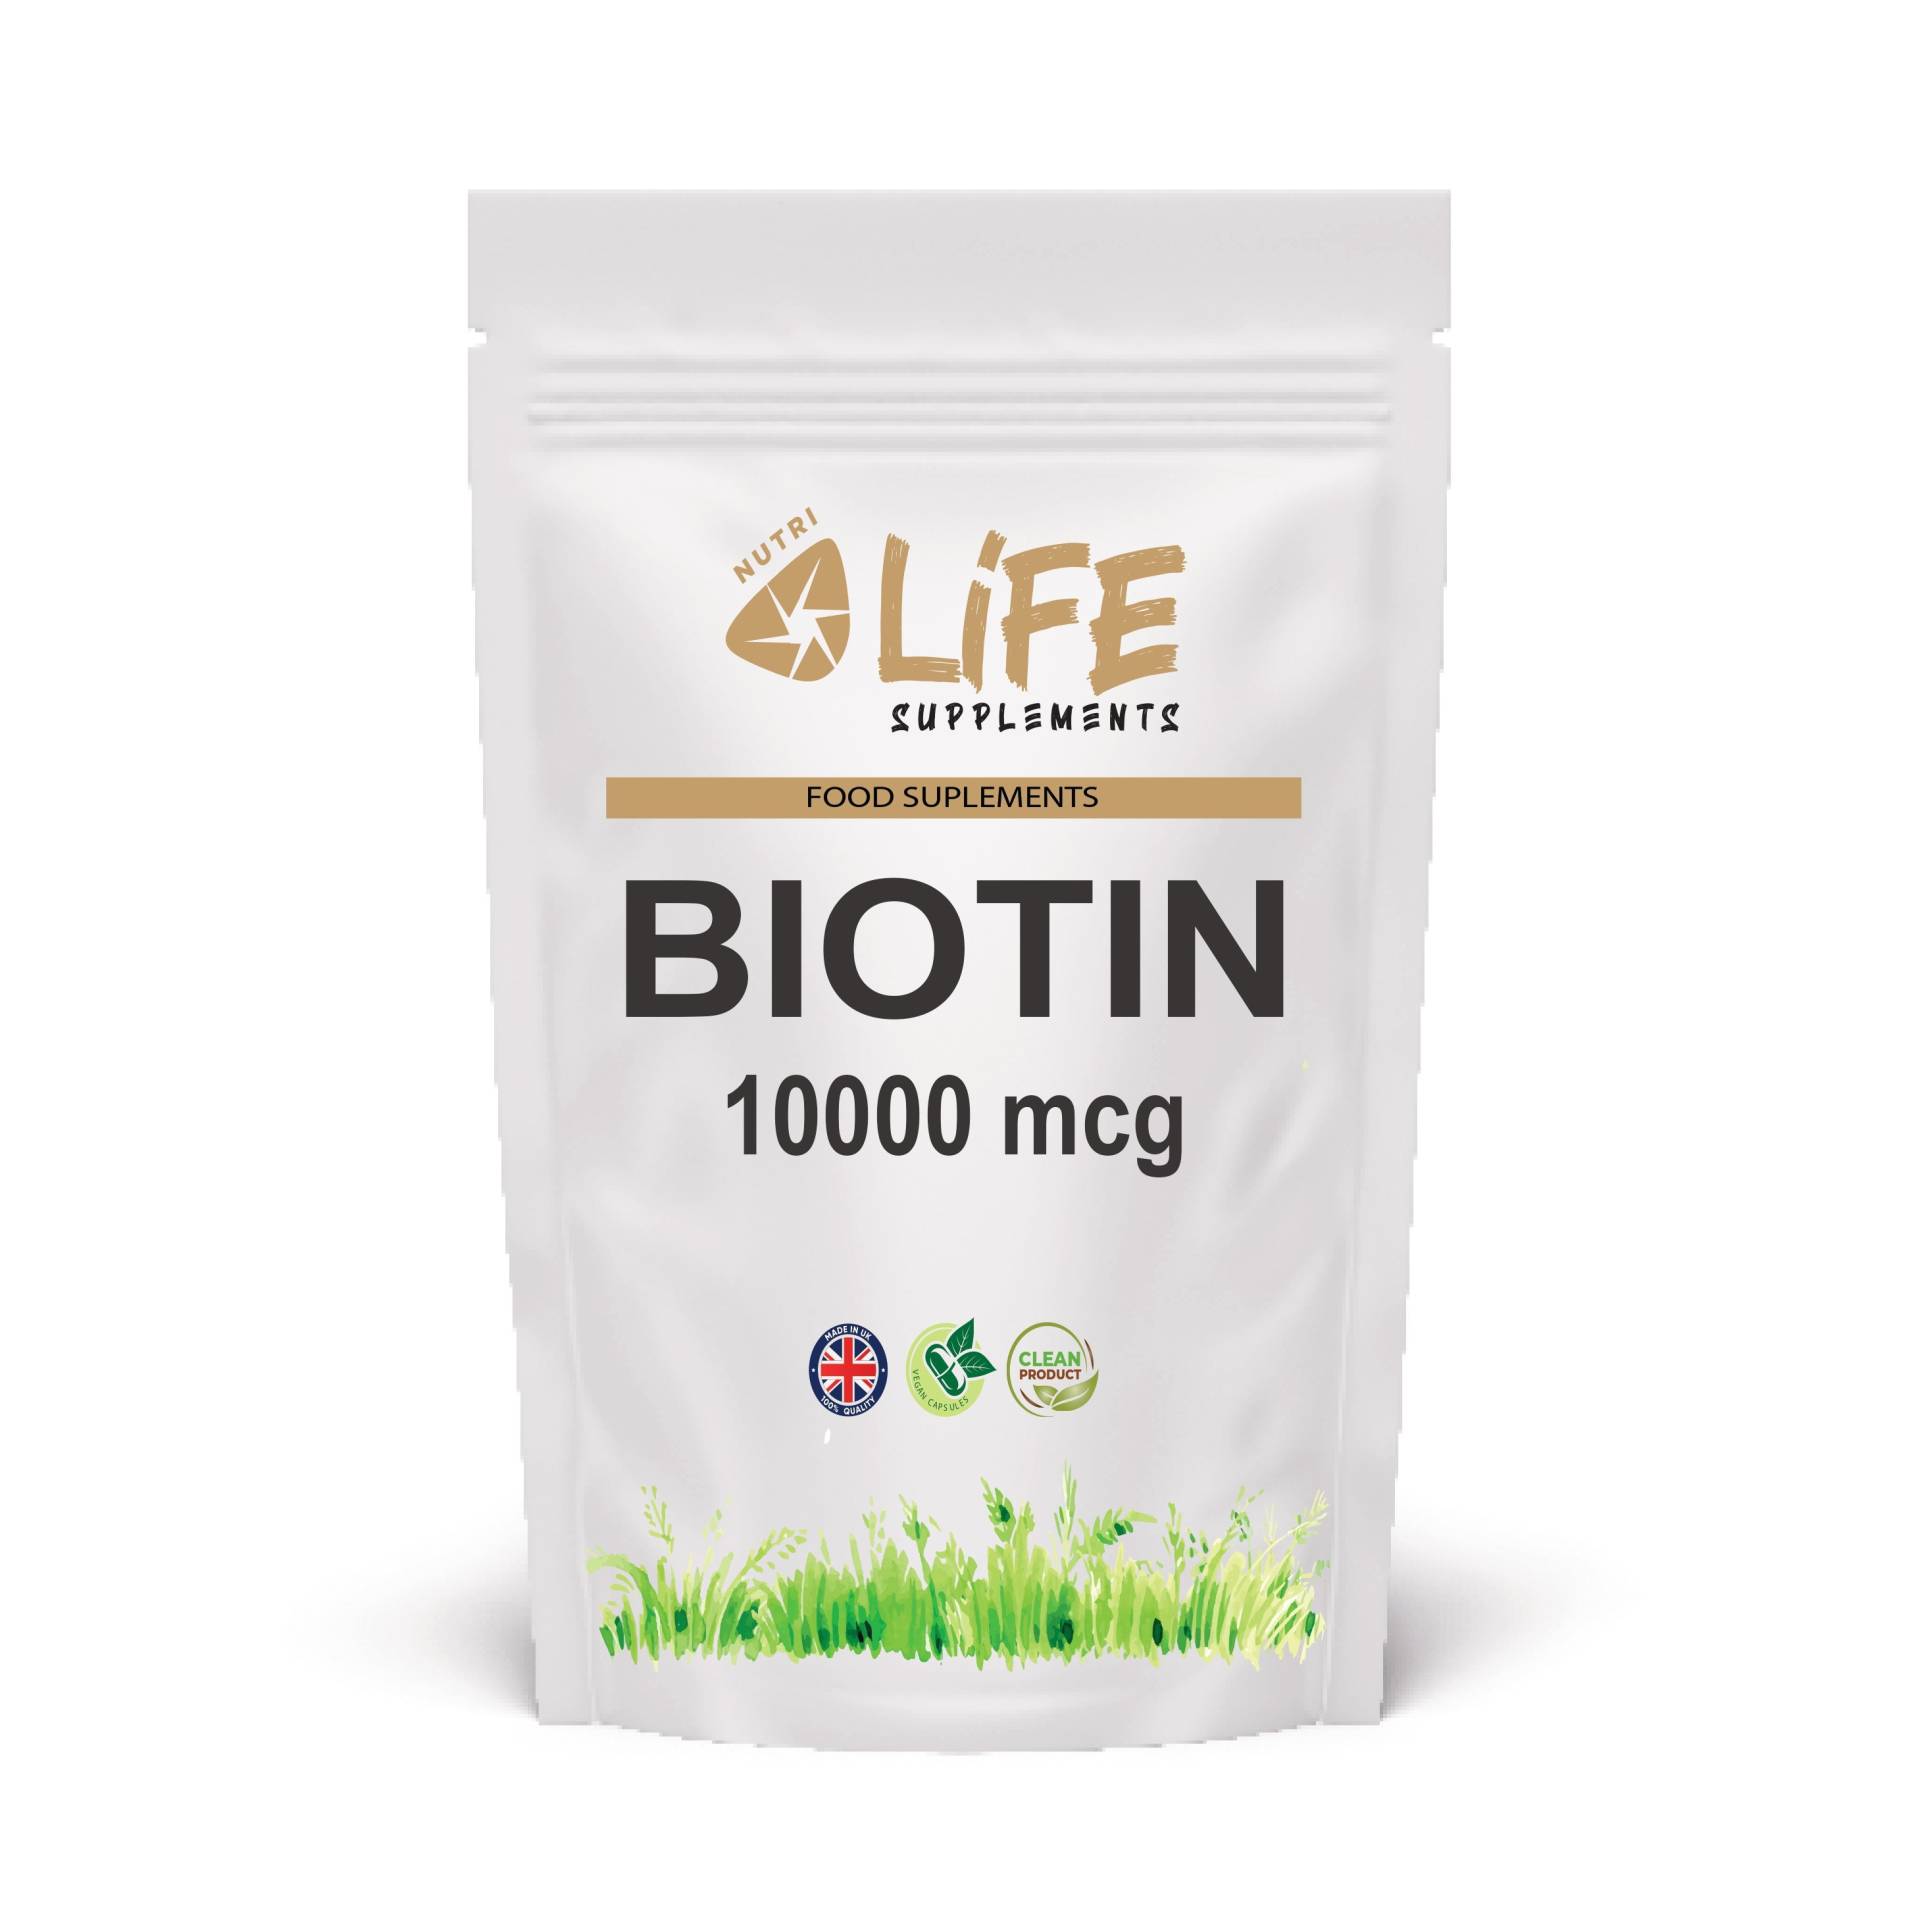 Biotin 190 Mg Kapseln Sauber Natürliche Ergänzung Vitamin B7 Uk von NutriLifeSupplements